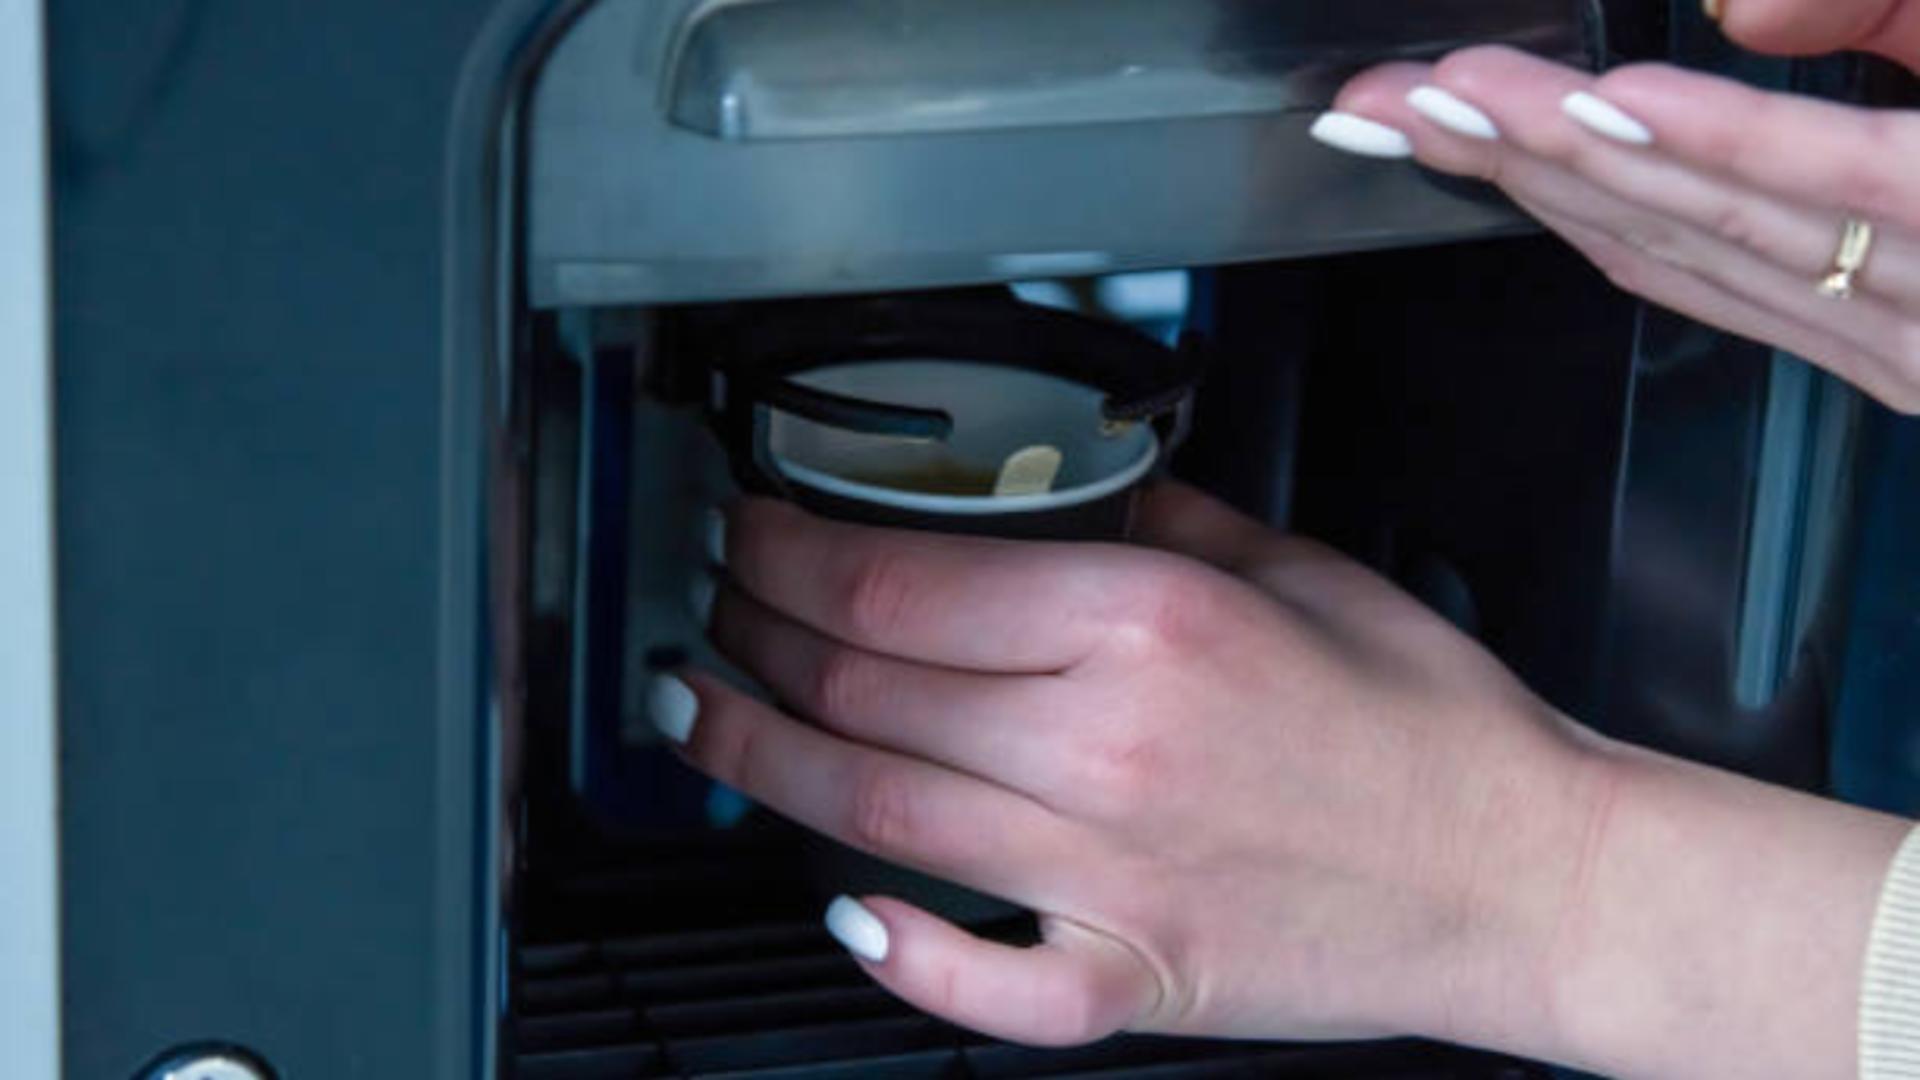 Automatele de cafea, adevărate bombe cu bacterii periculoase